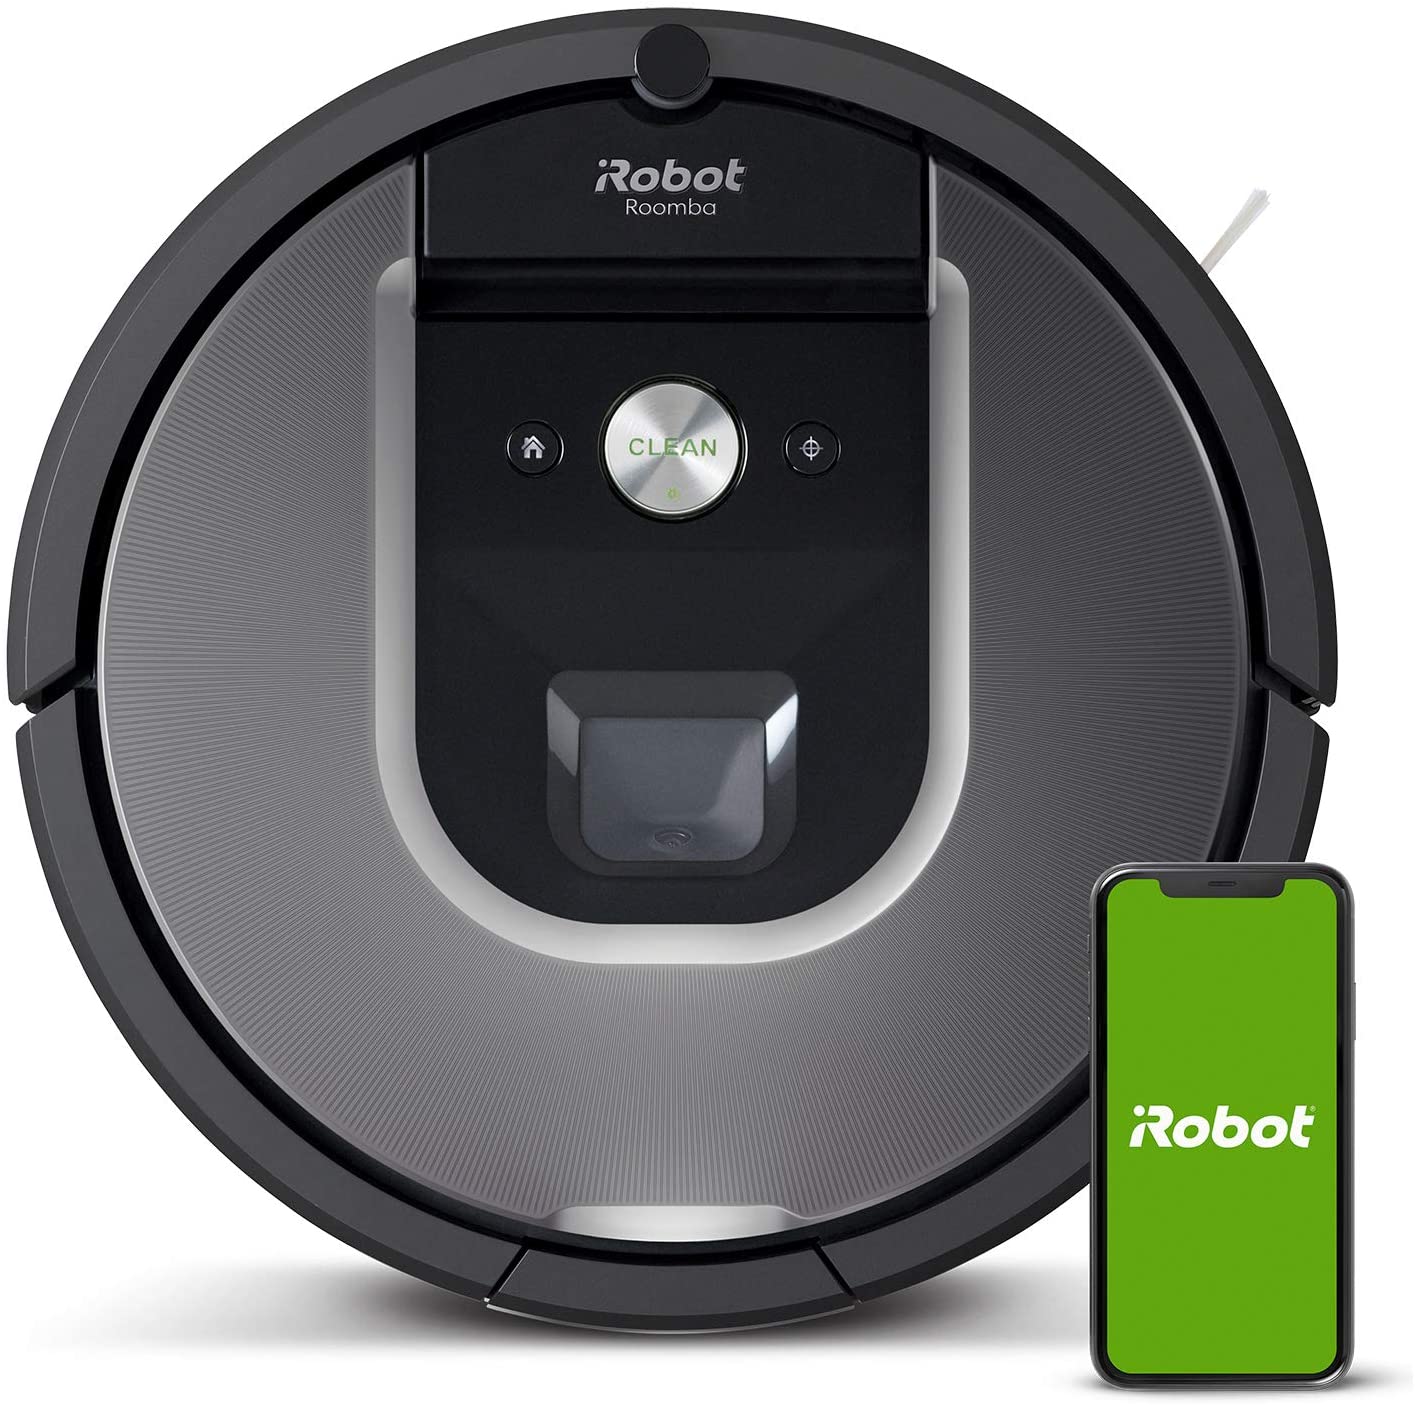 Roomba 960 vs Roomba 981 (980)